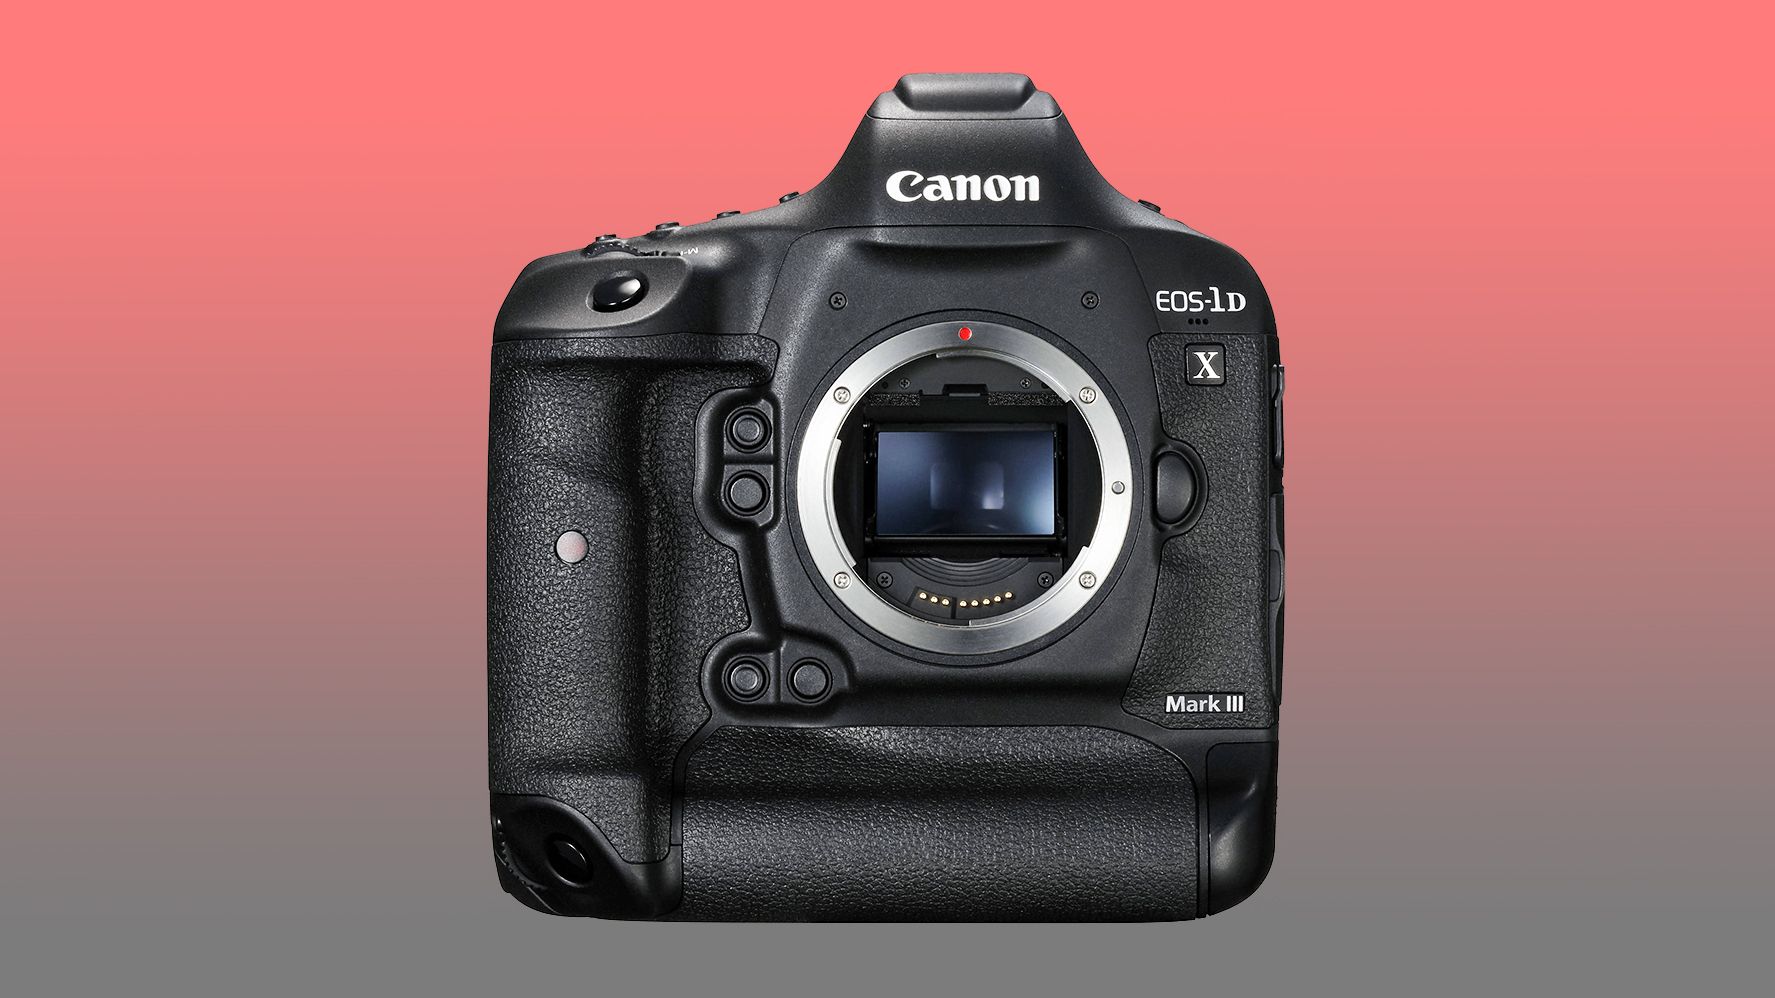 Canon 1ds mark. Canon 1dx Mark 3. Canon EOS-1ds Mark III. Canon EOS 1ds Mark lll. Canon EOS 1d x Mark III body.